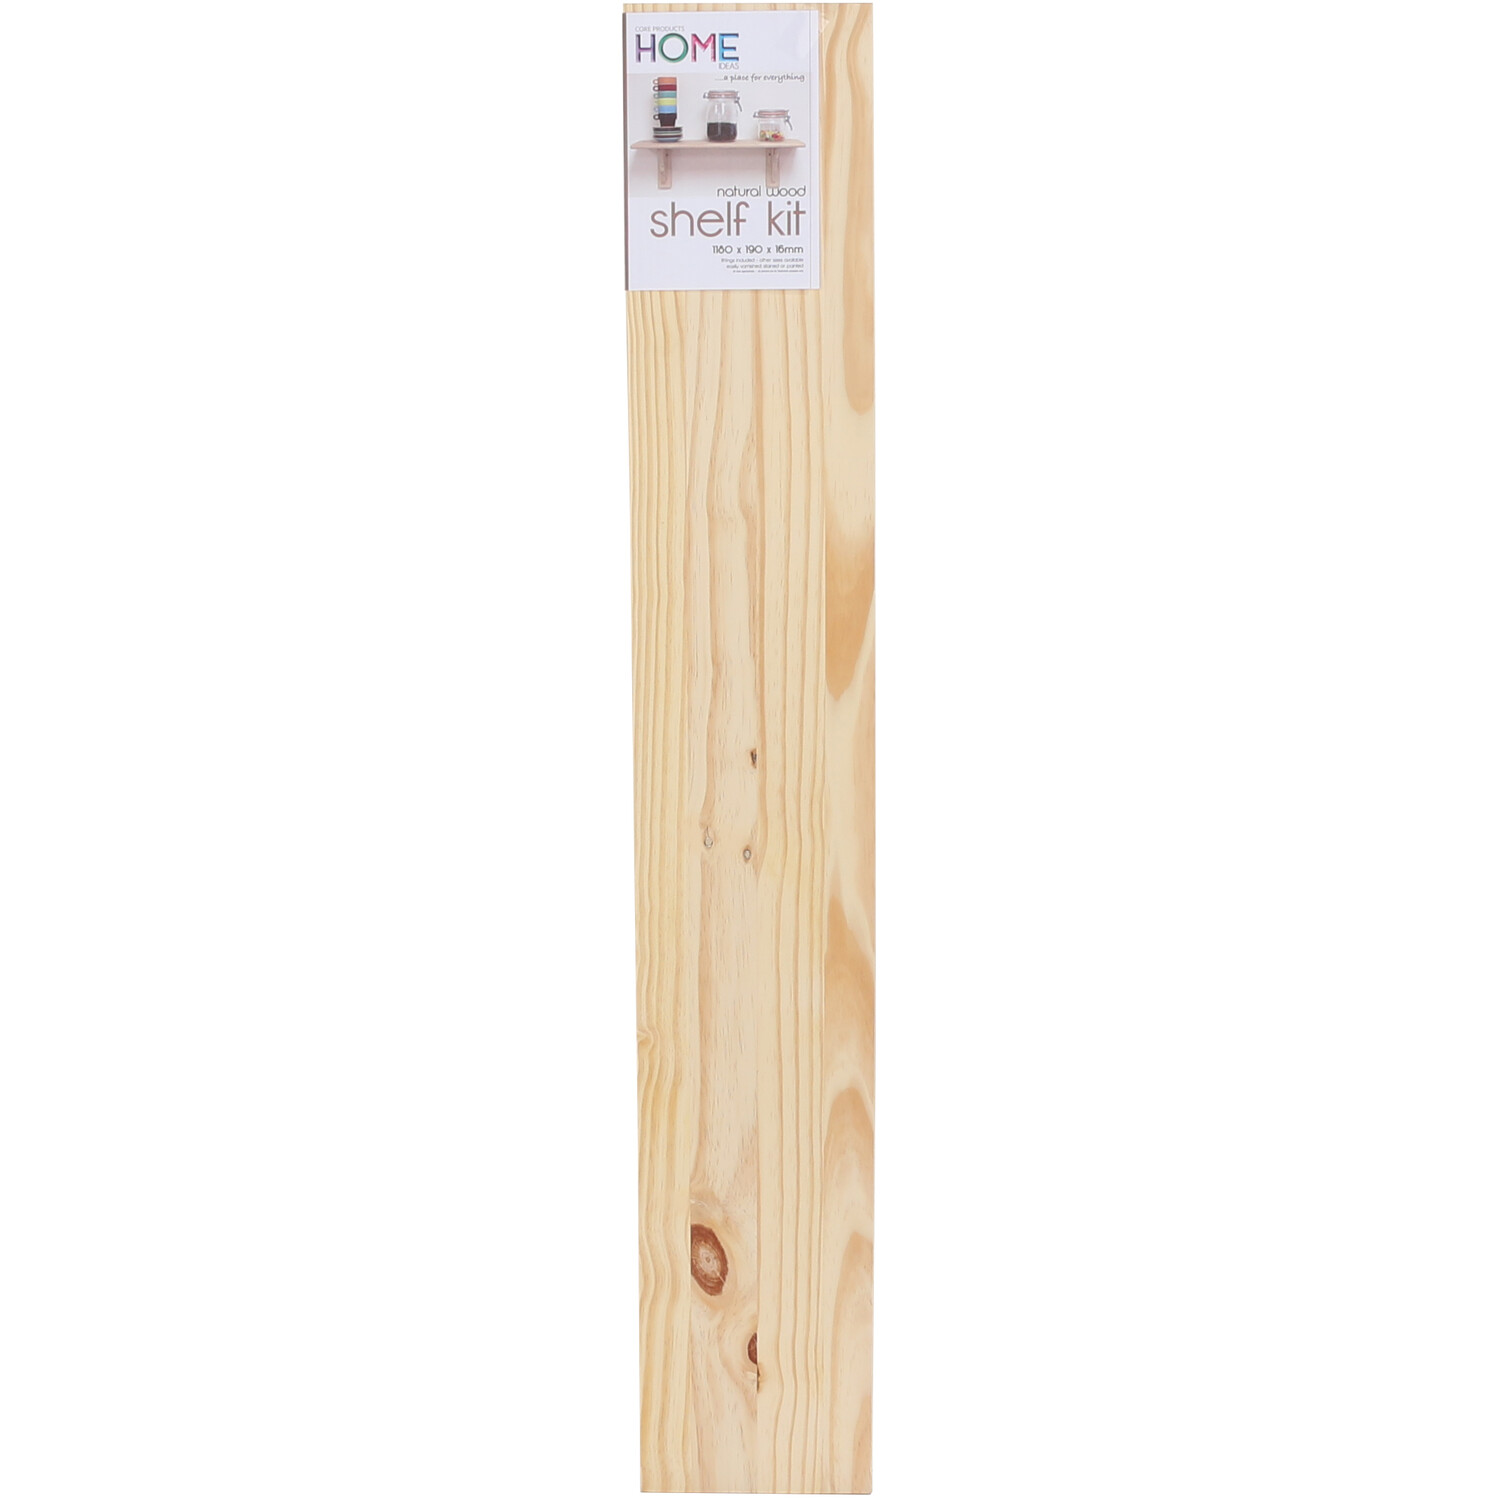 Sanded Pine Natural Wood Shelf Kit 119cm Image